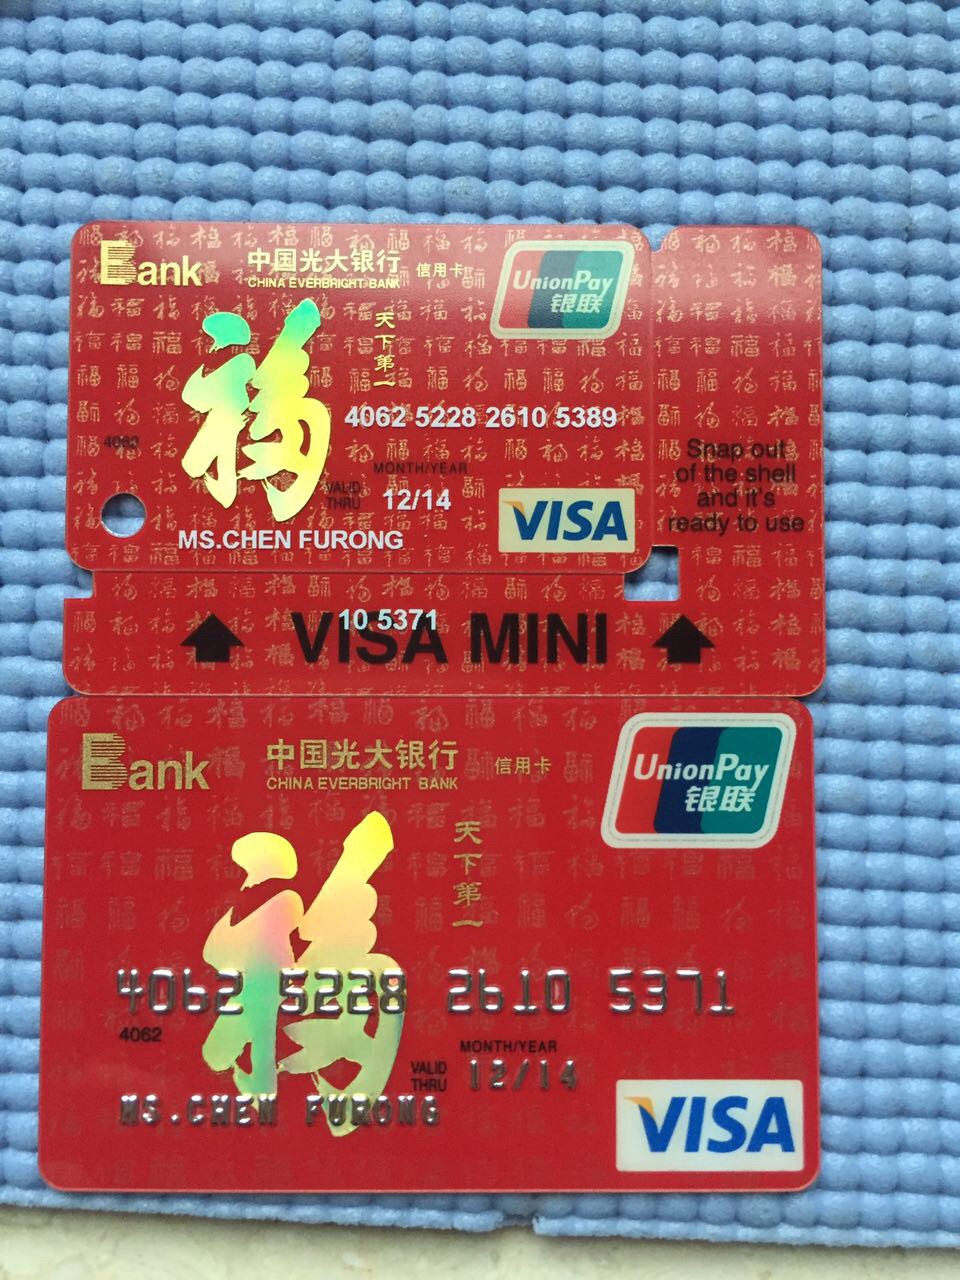 光大银行信用卡照片图片